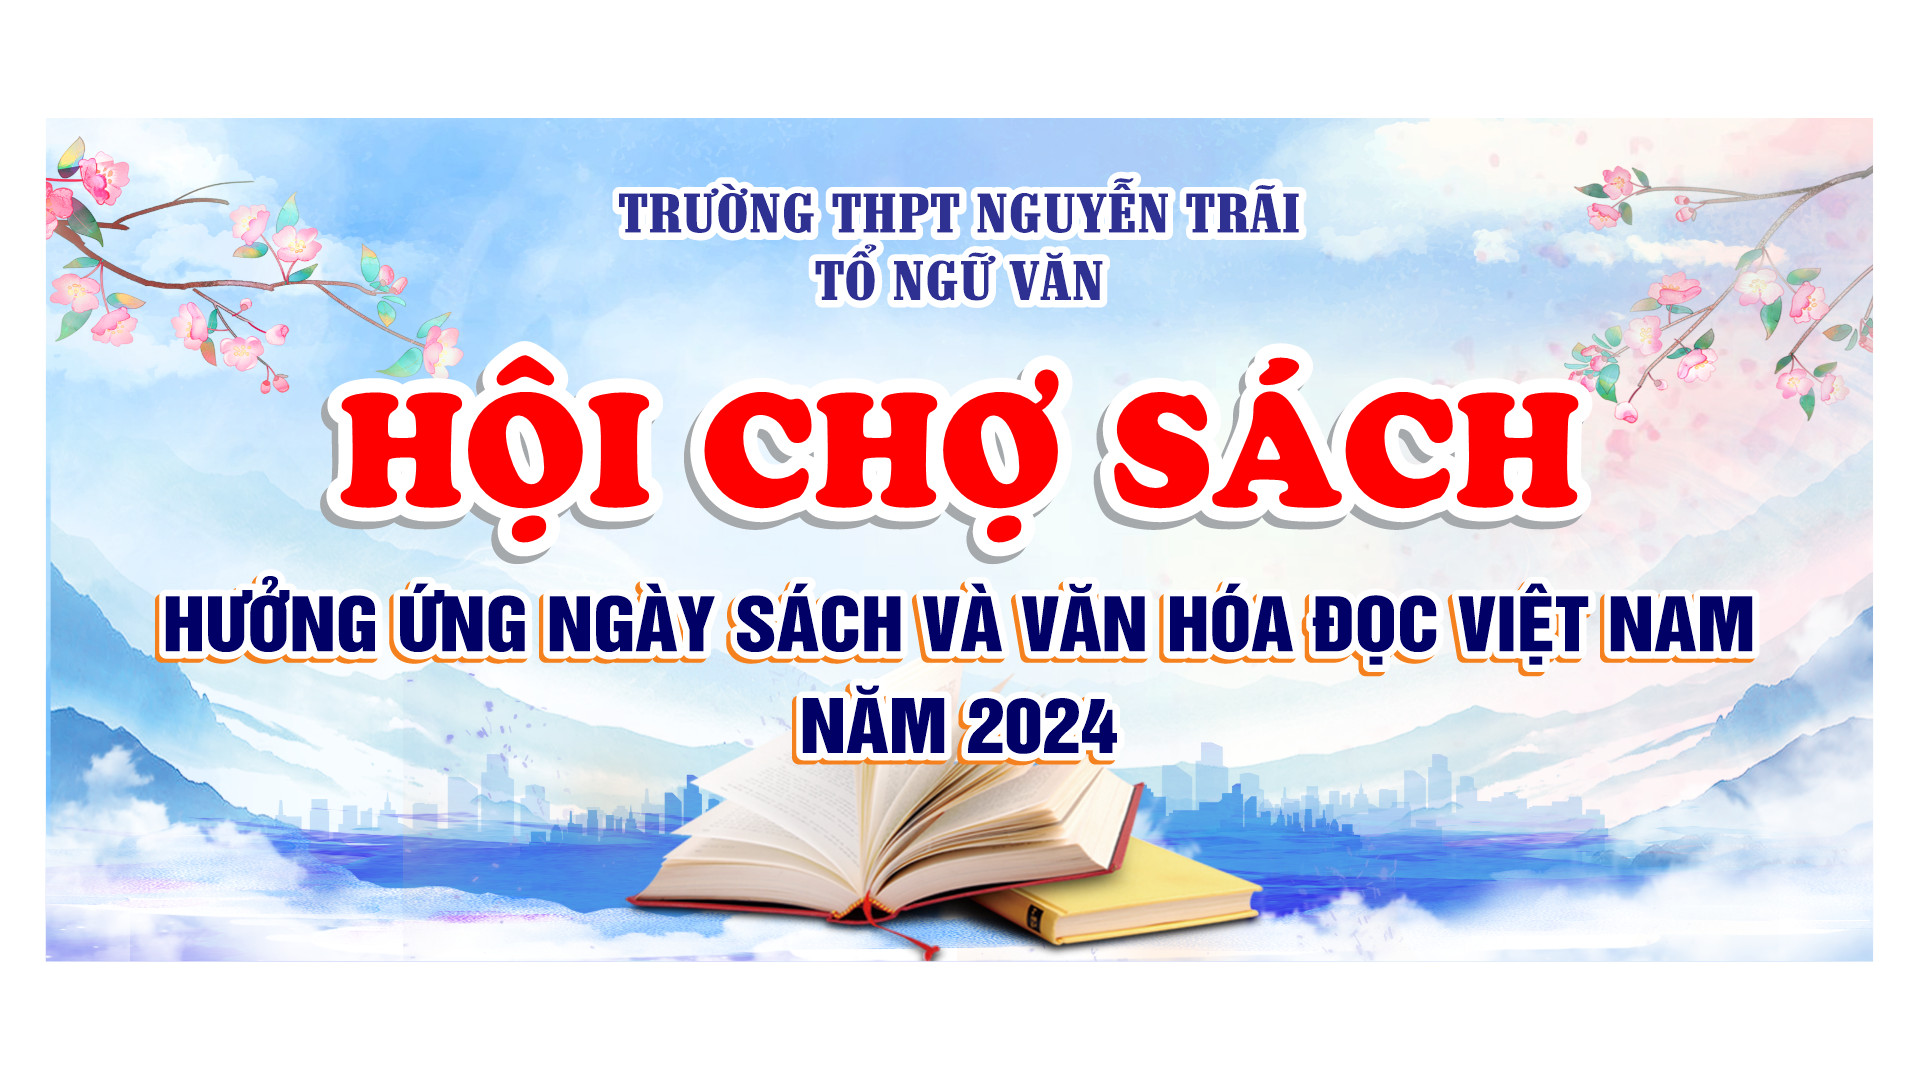 Tổ Ngữ văn trường THPT Nguyễn Trãi  tổ chức buổi ngoại khoá hưởng ứng ngày